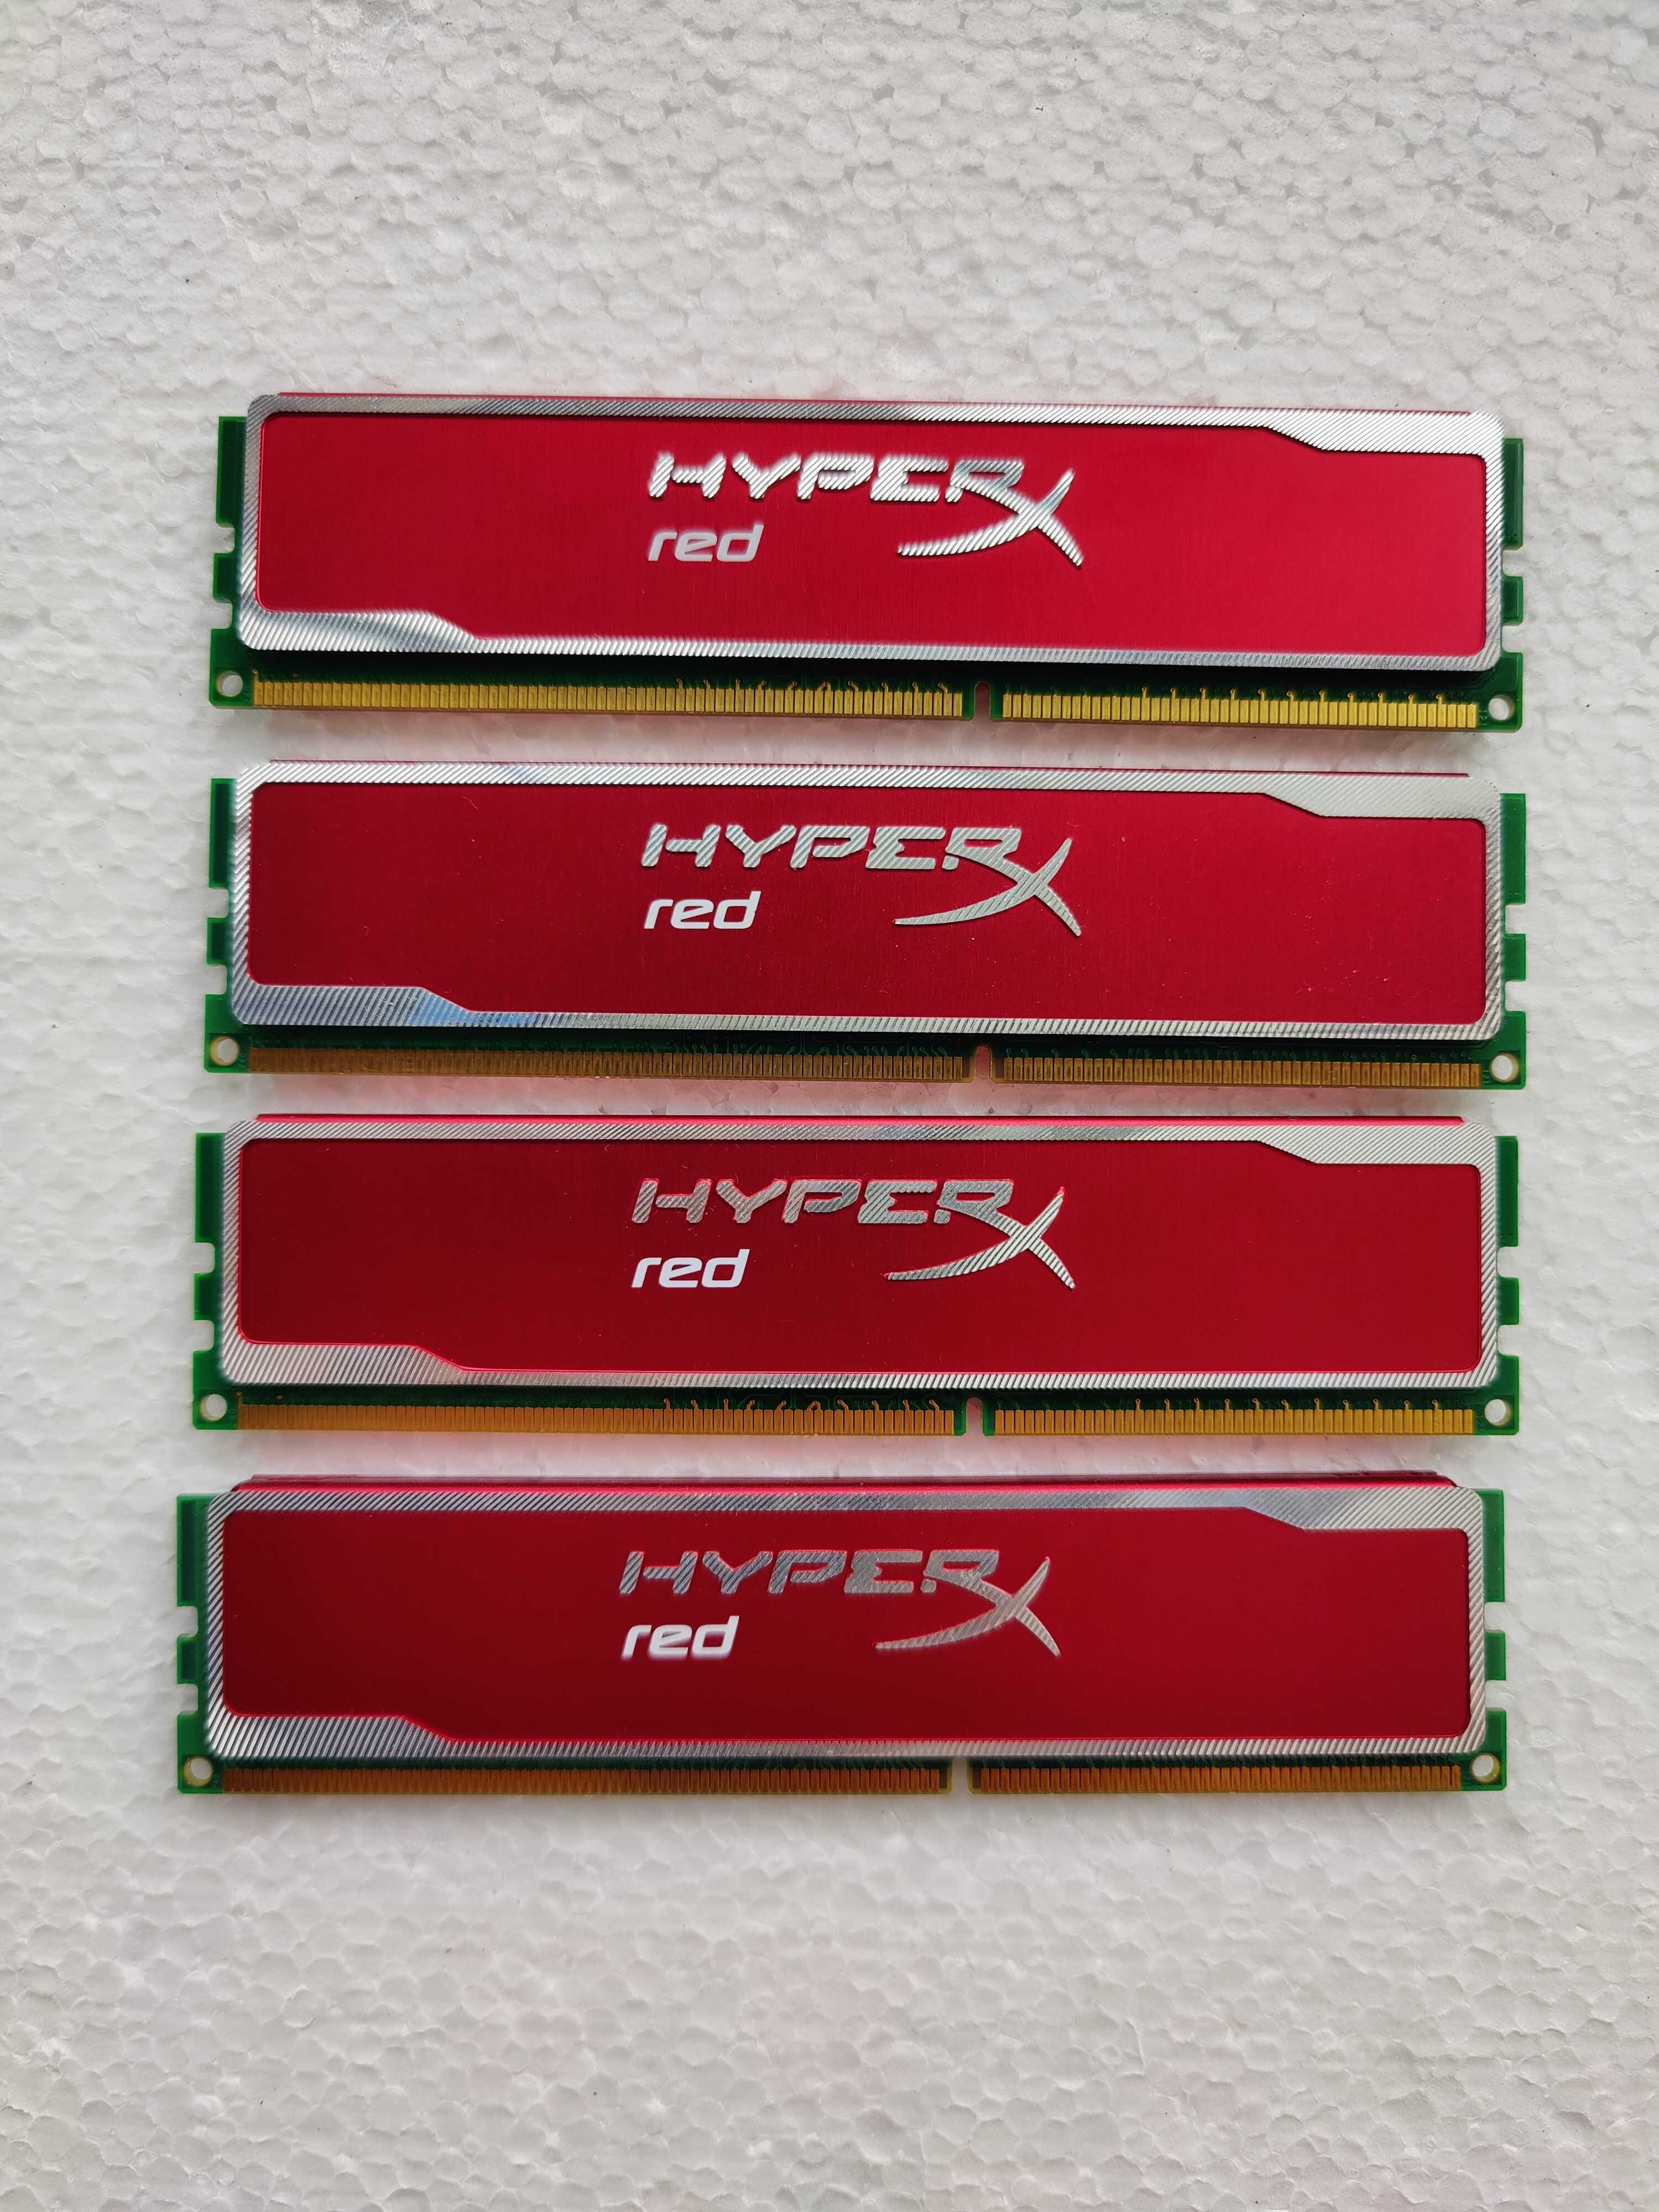 Kit Memorii ram Kingston HyperX red KHX16C9B1RK, 4 bucati x 2 Gb ddr3